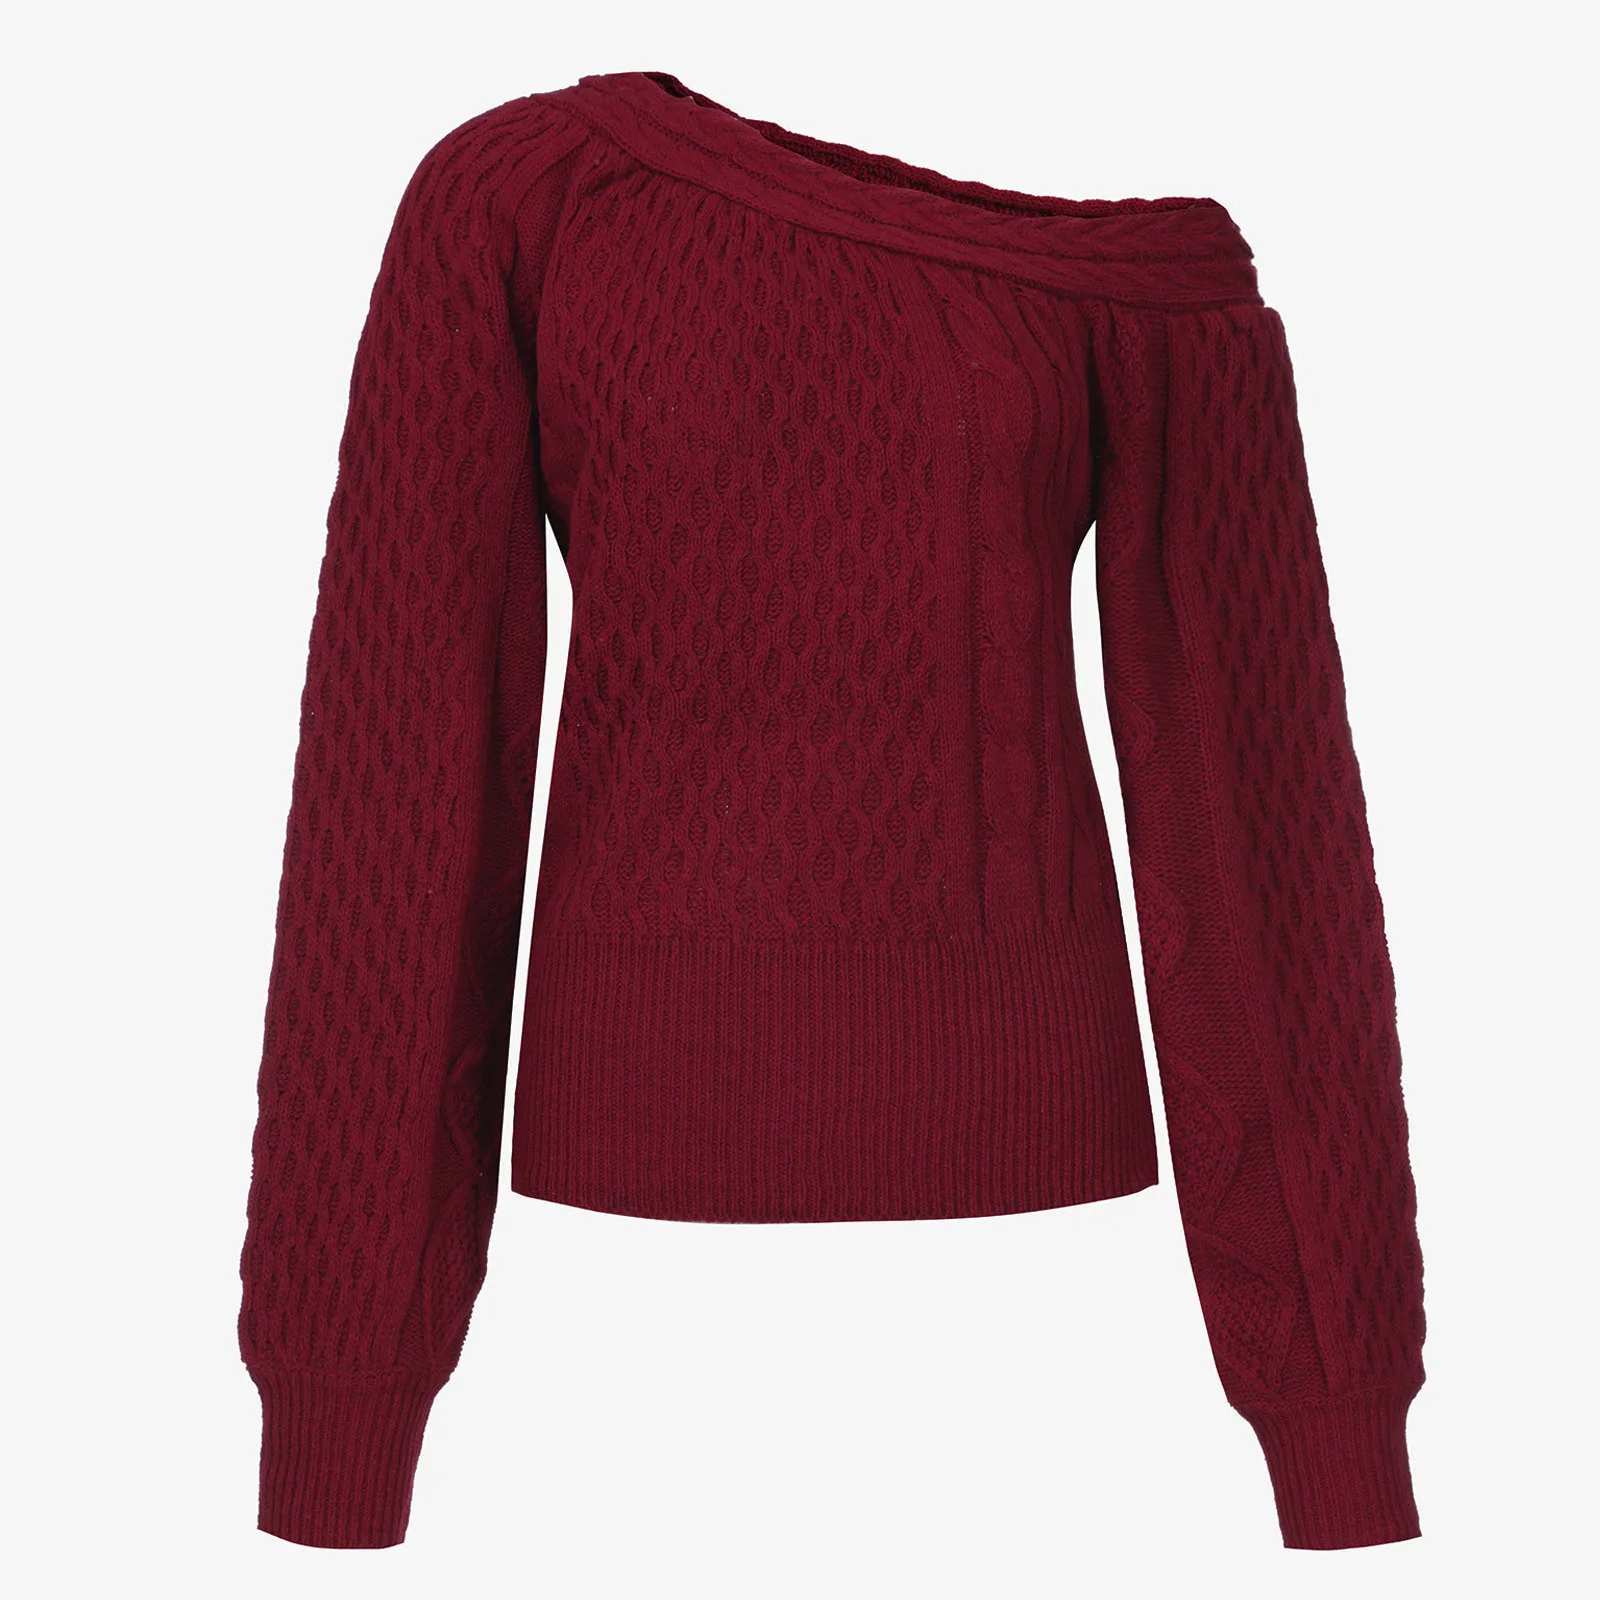 2020 Sexet Strikket Sweater Off Skulder Pullovere Trøje til Kvinder med Lange Ærmer V-hals Kvindelige Jumper Sort Rød Tøj #1214 5